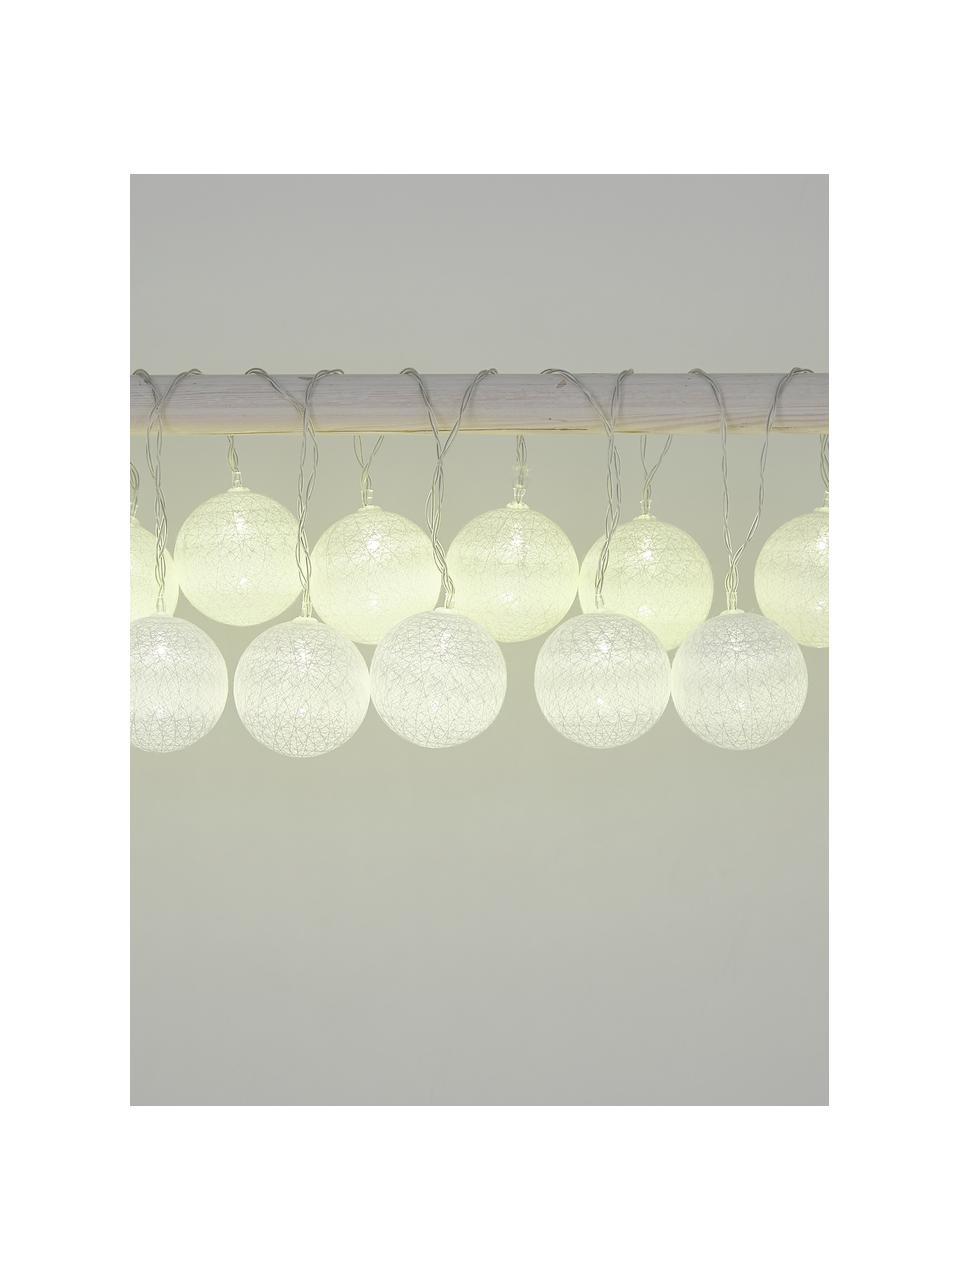 Girlanda świetlna LED Bellin, 320 cm, Kremowy, biały, D 320 cm